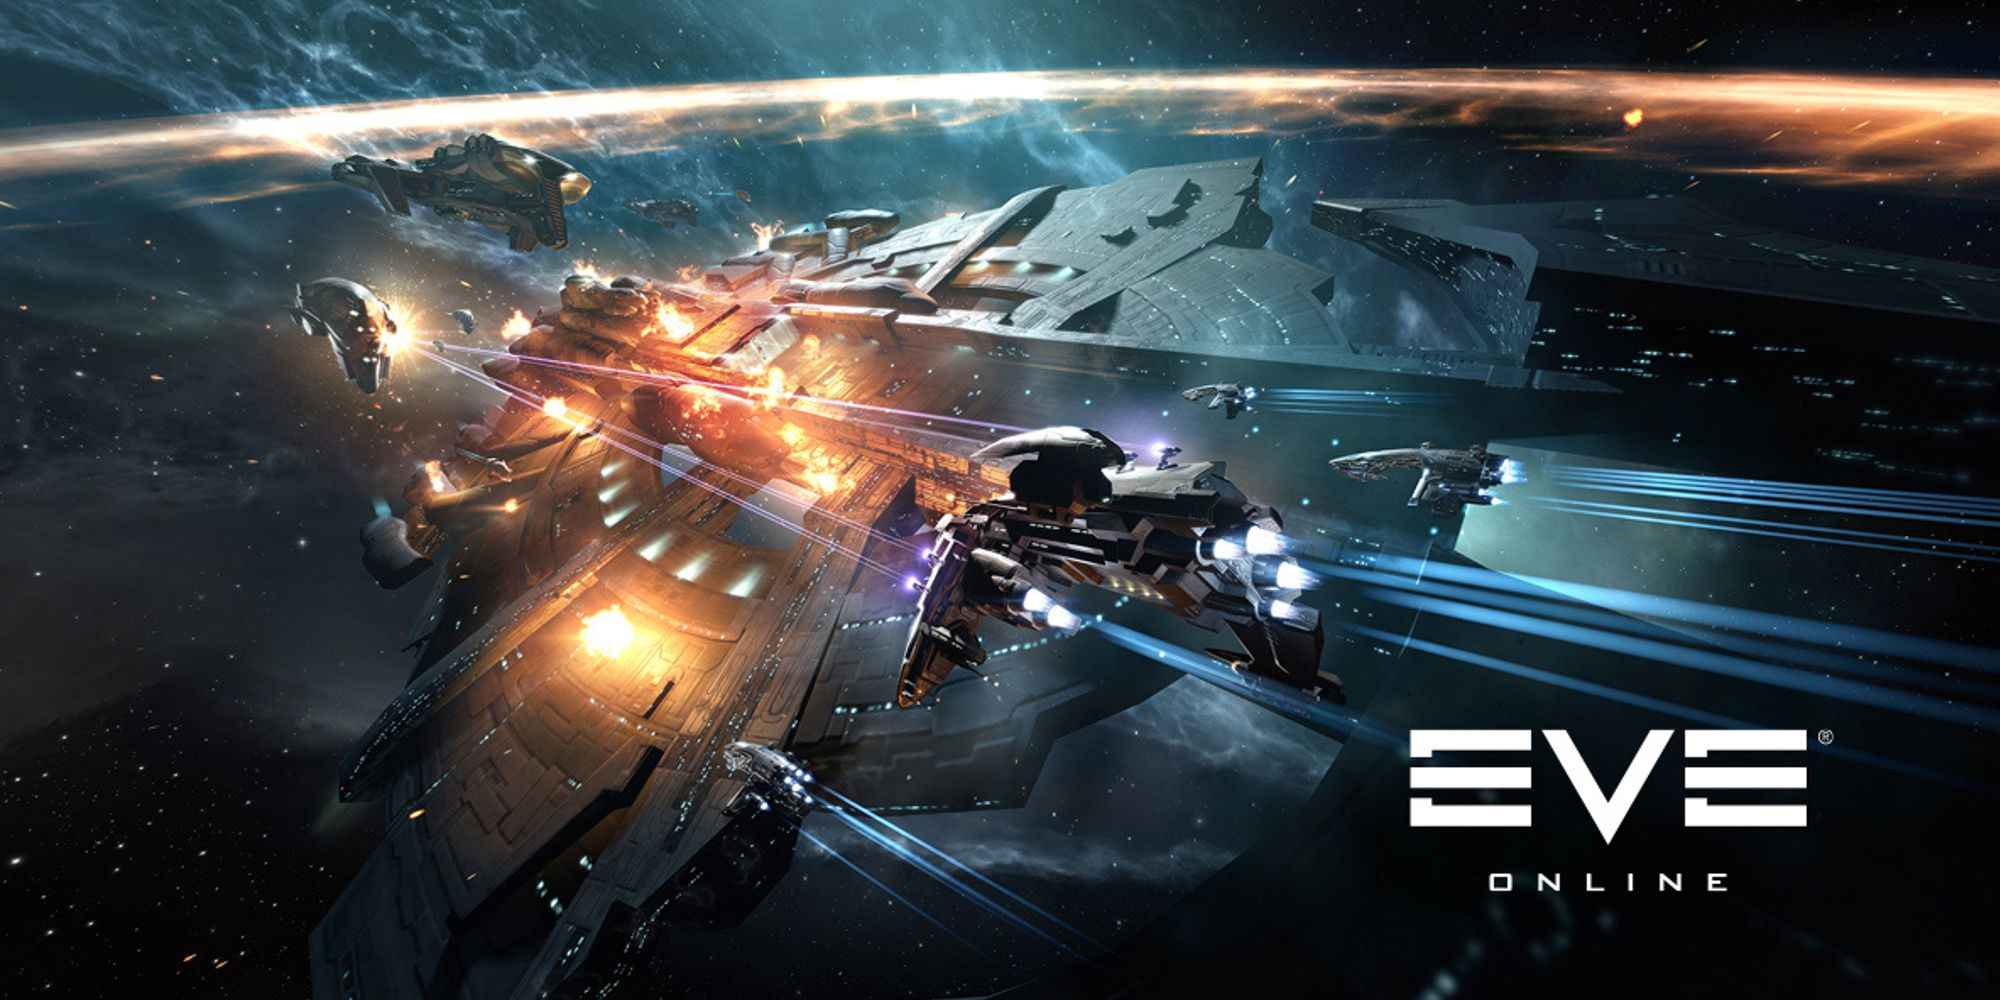 Space battle between ships in EVE Online